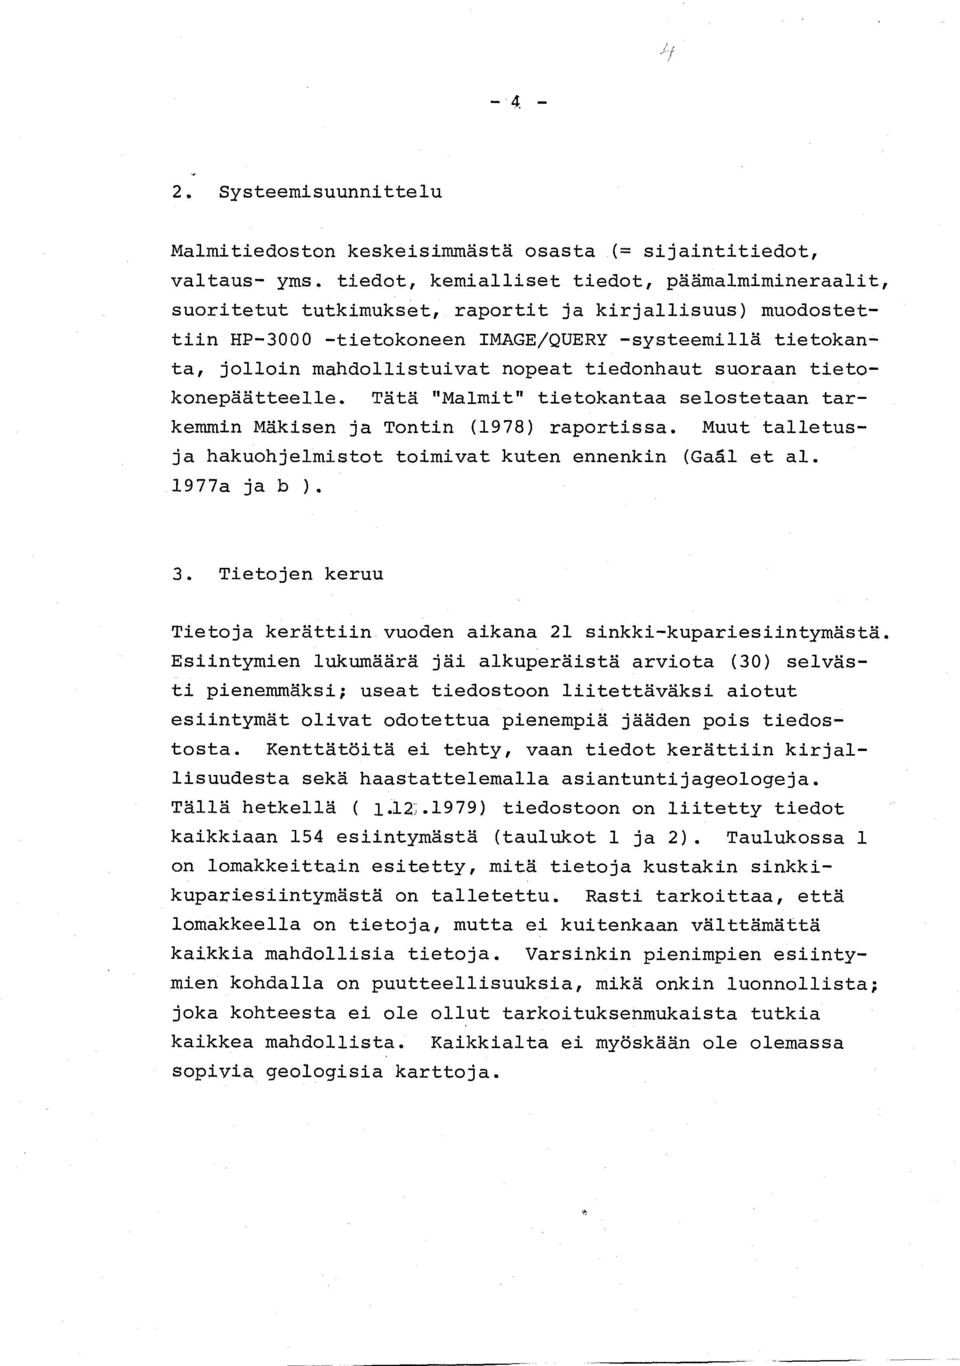 nopeat tiedonhaut suoraan tietokonepäätteelle. Tätä "Malmit" tietokantaa selostetaan tarkemmin Mäkisen ja Tontin (1978) raportissa. Muut talletusja hakuohjelmistot toimivat kuten ennenkin (Gaål et al.